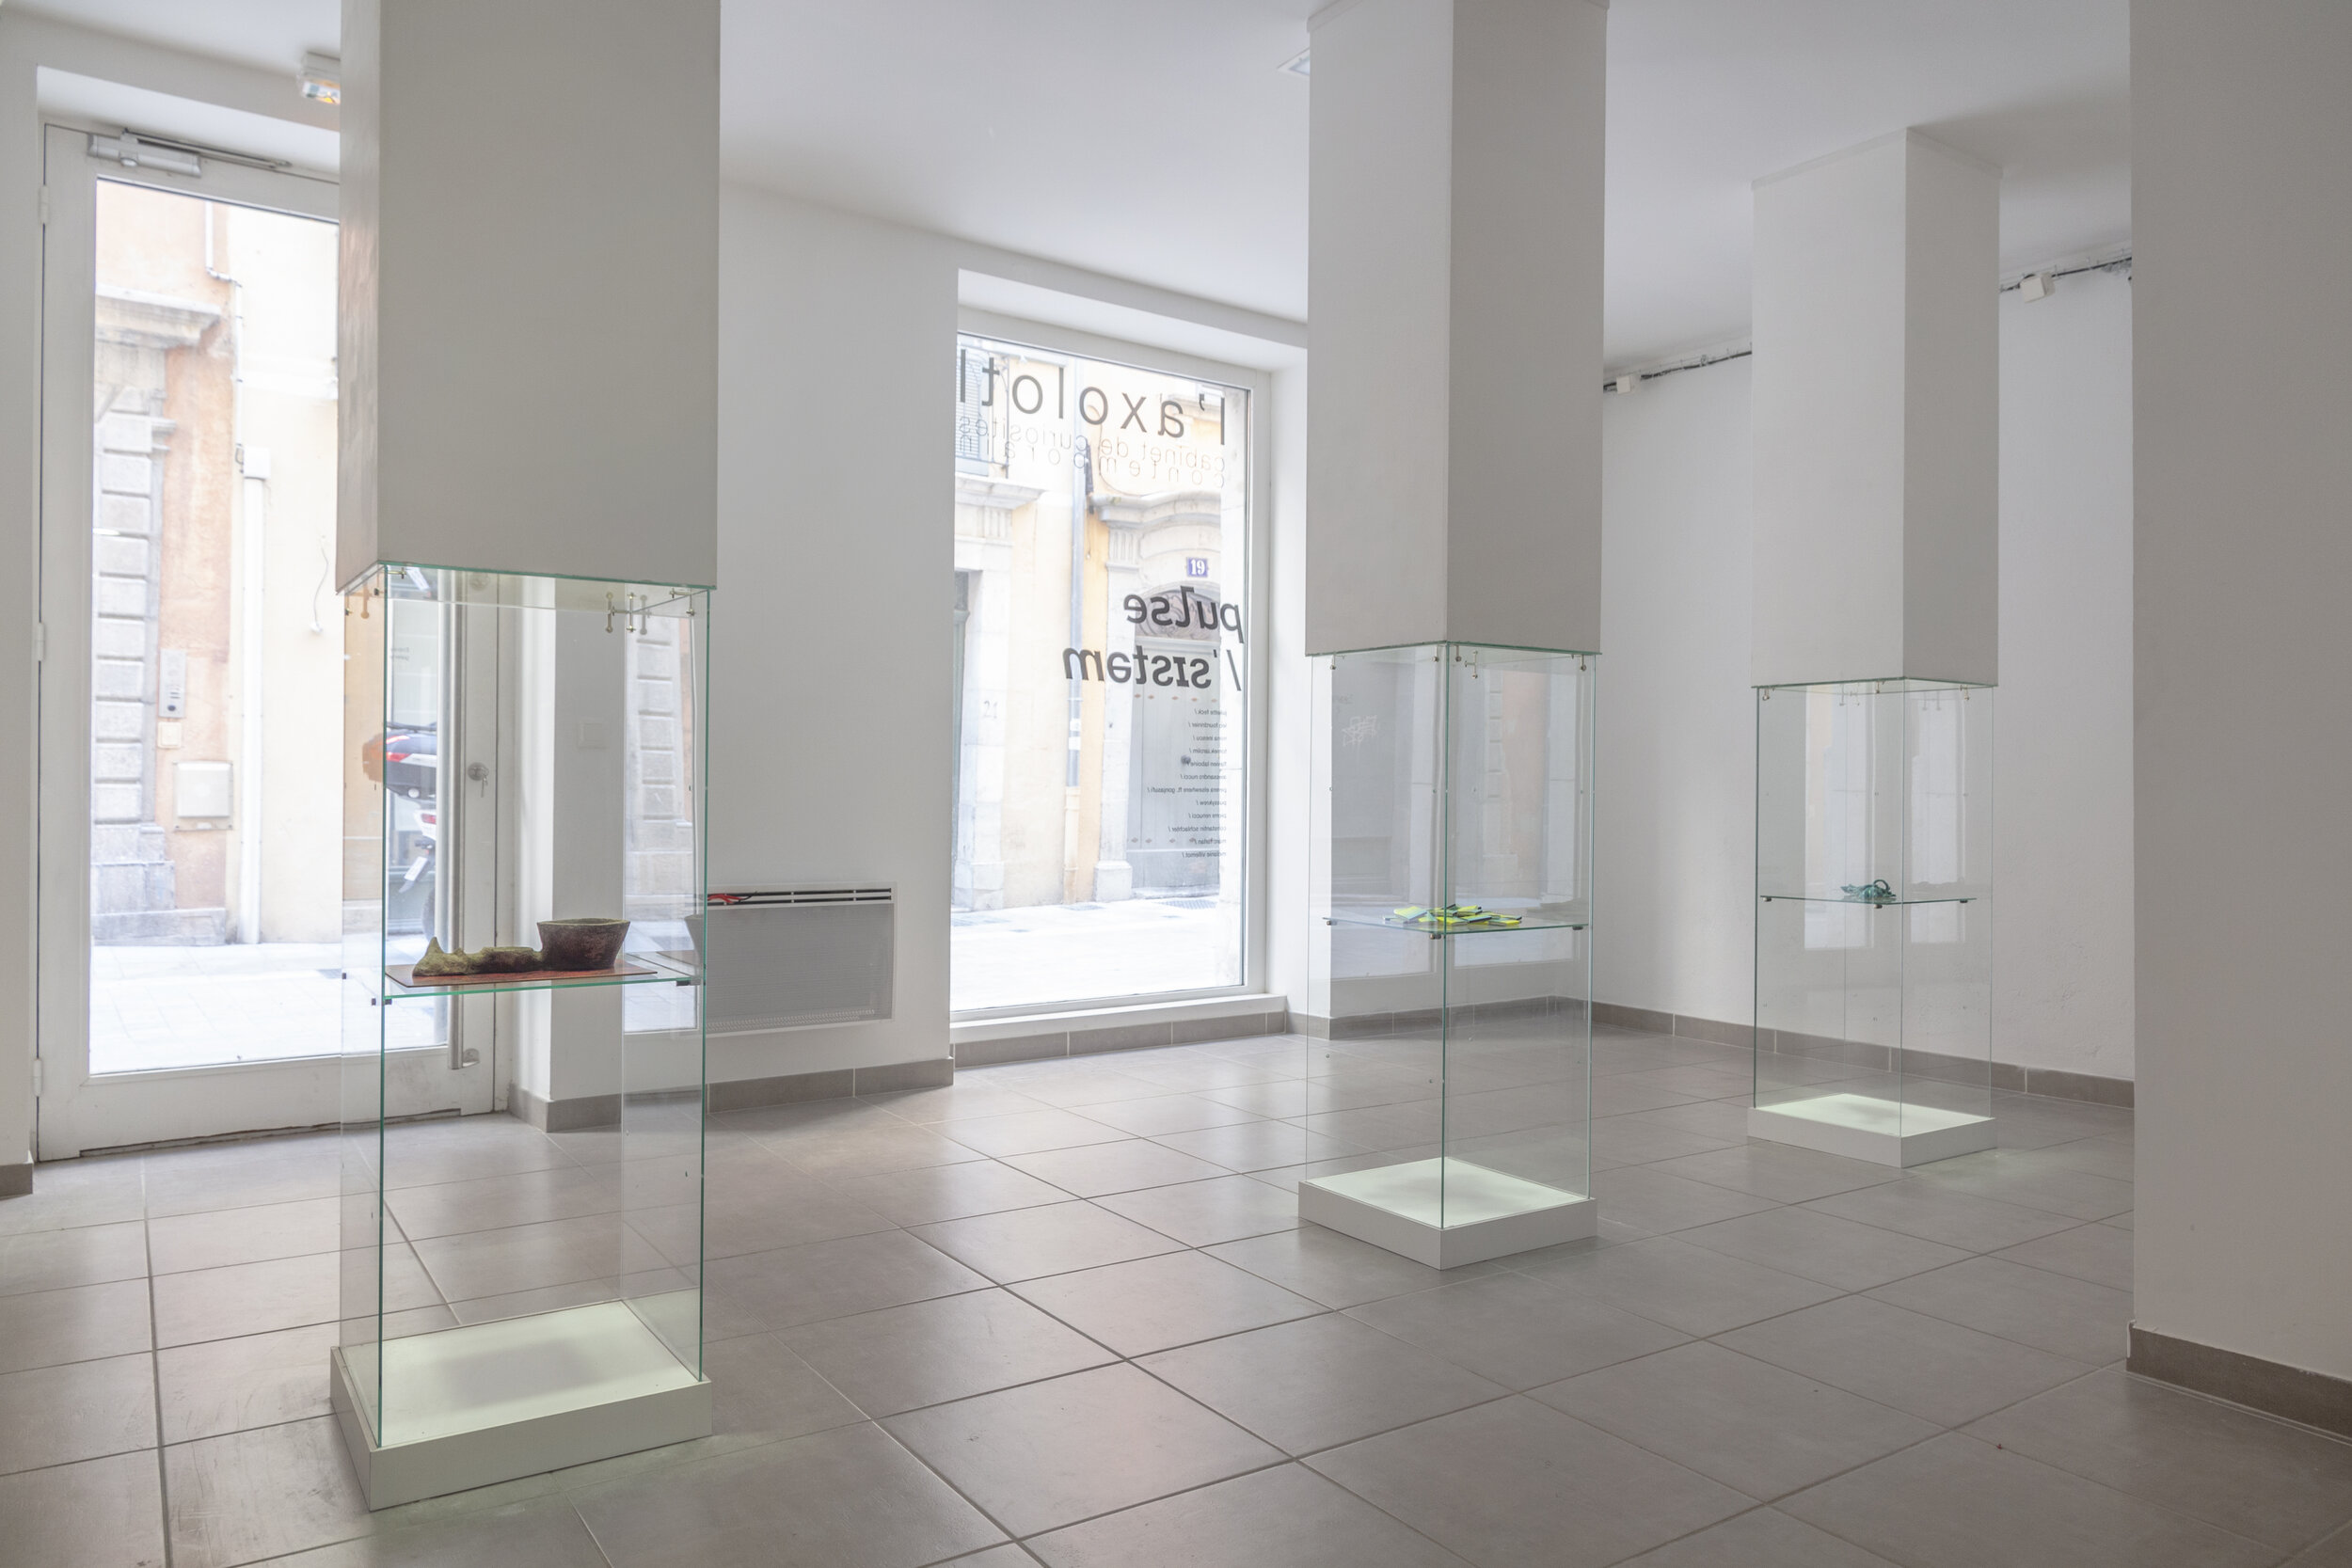 00a - exhibition view - A.Nucci + M.Villemot + J.Feck.jpg